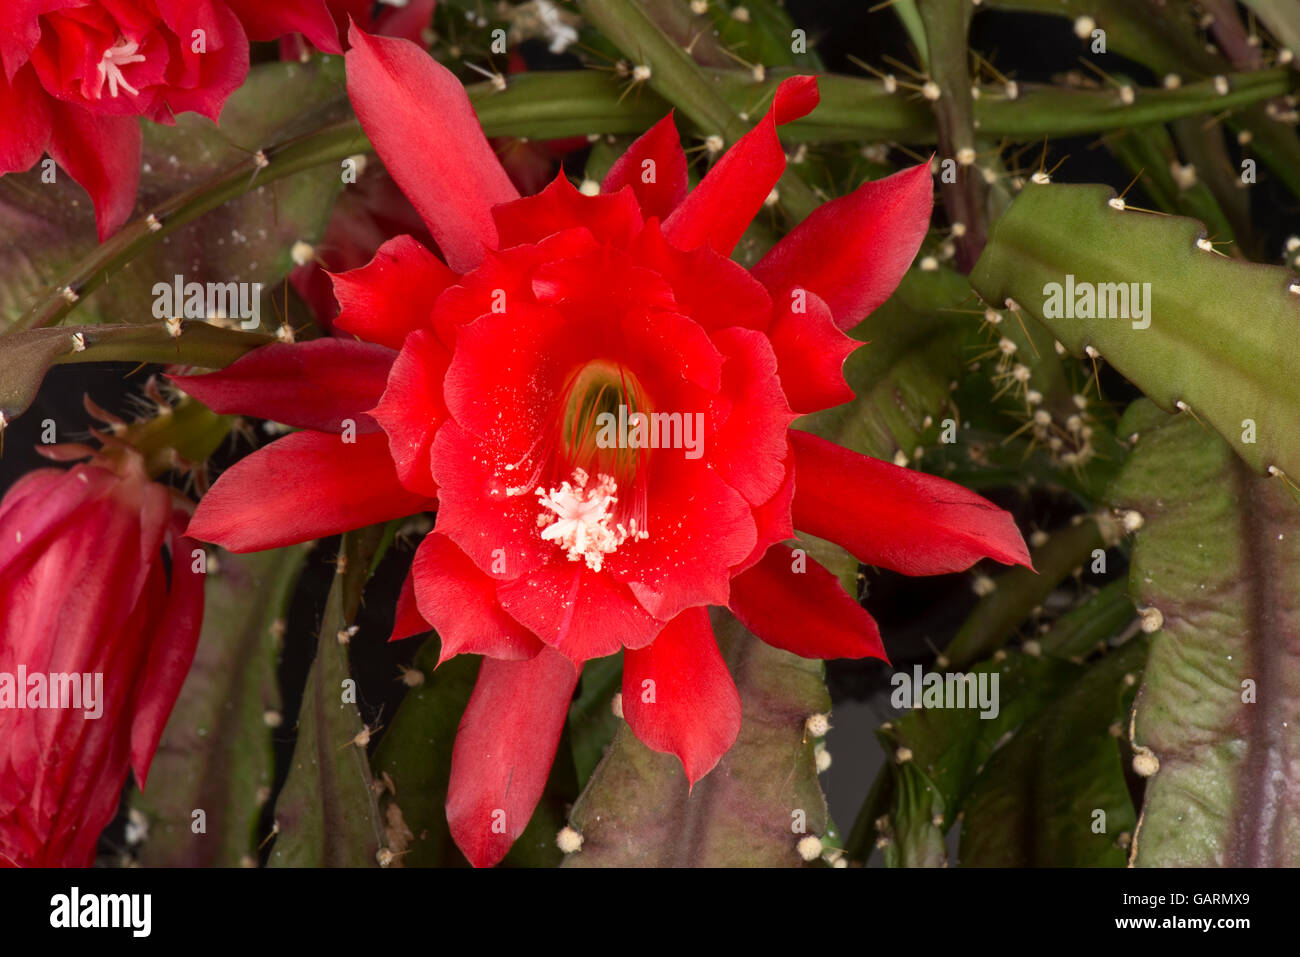 Fleur rouge d'une orchidée ou cactus de Pâques, Disocactus x jenkinsonii, une plante de maison à fleurs, mai Banque D'Images